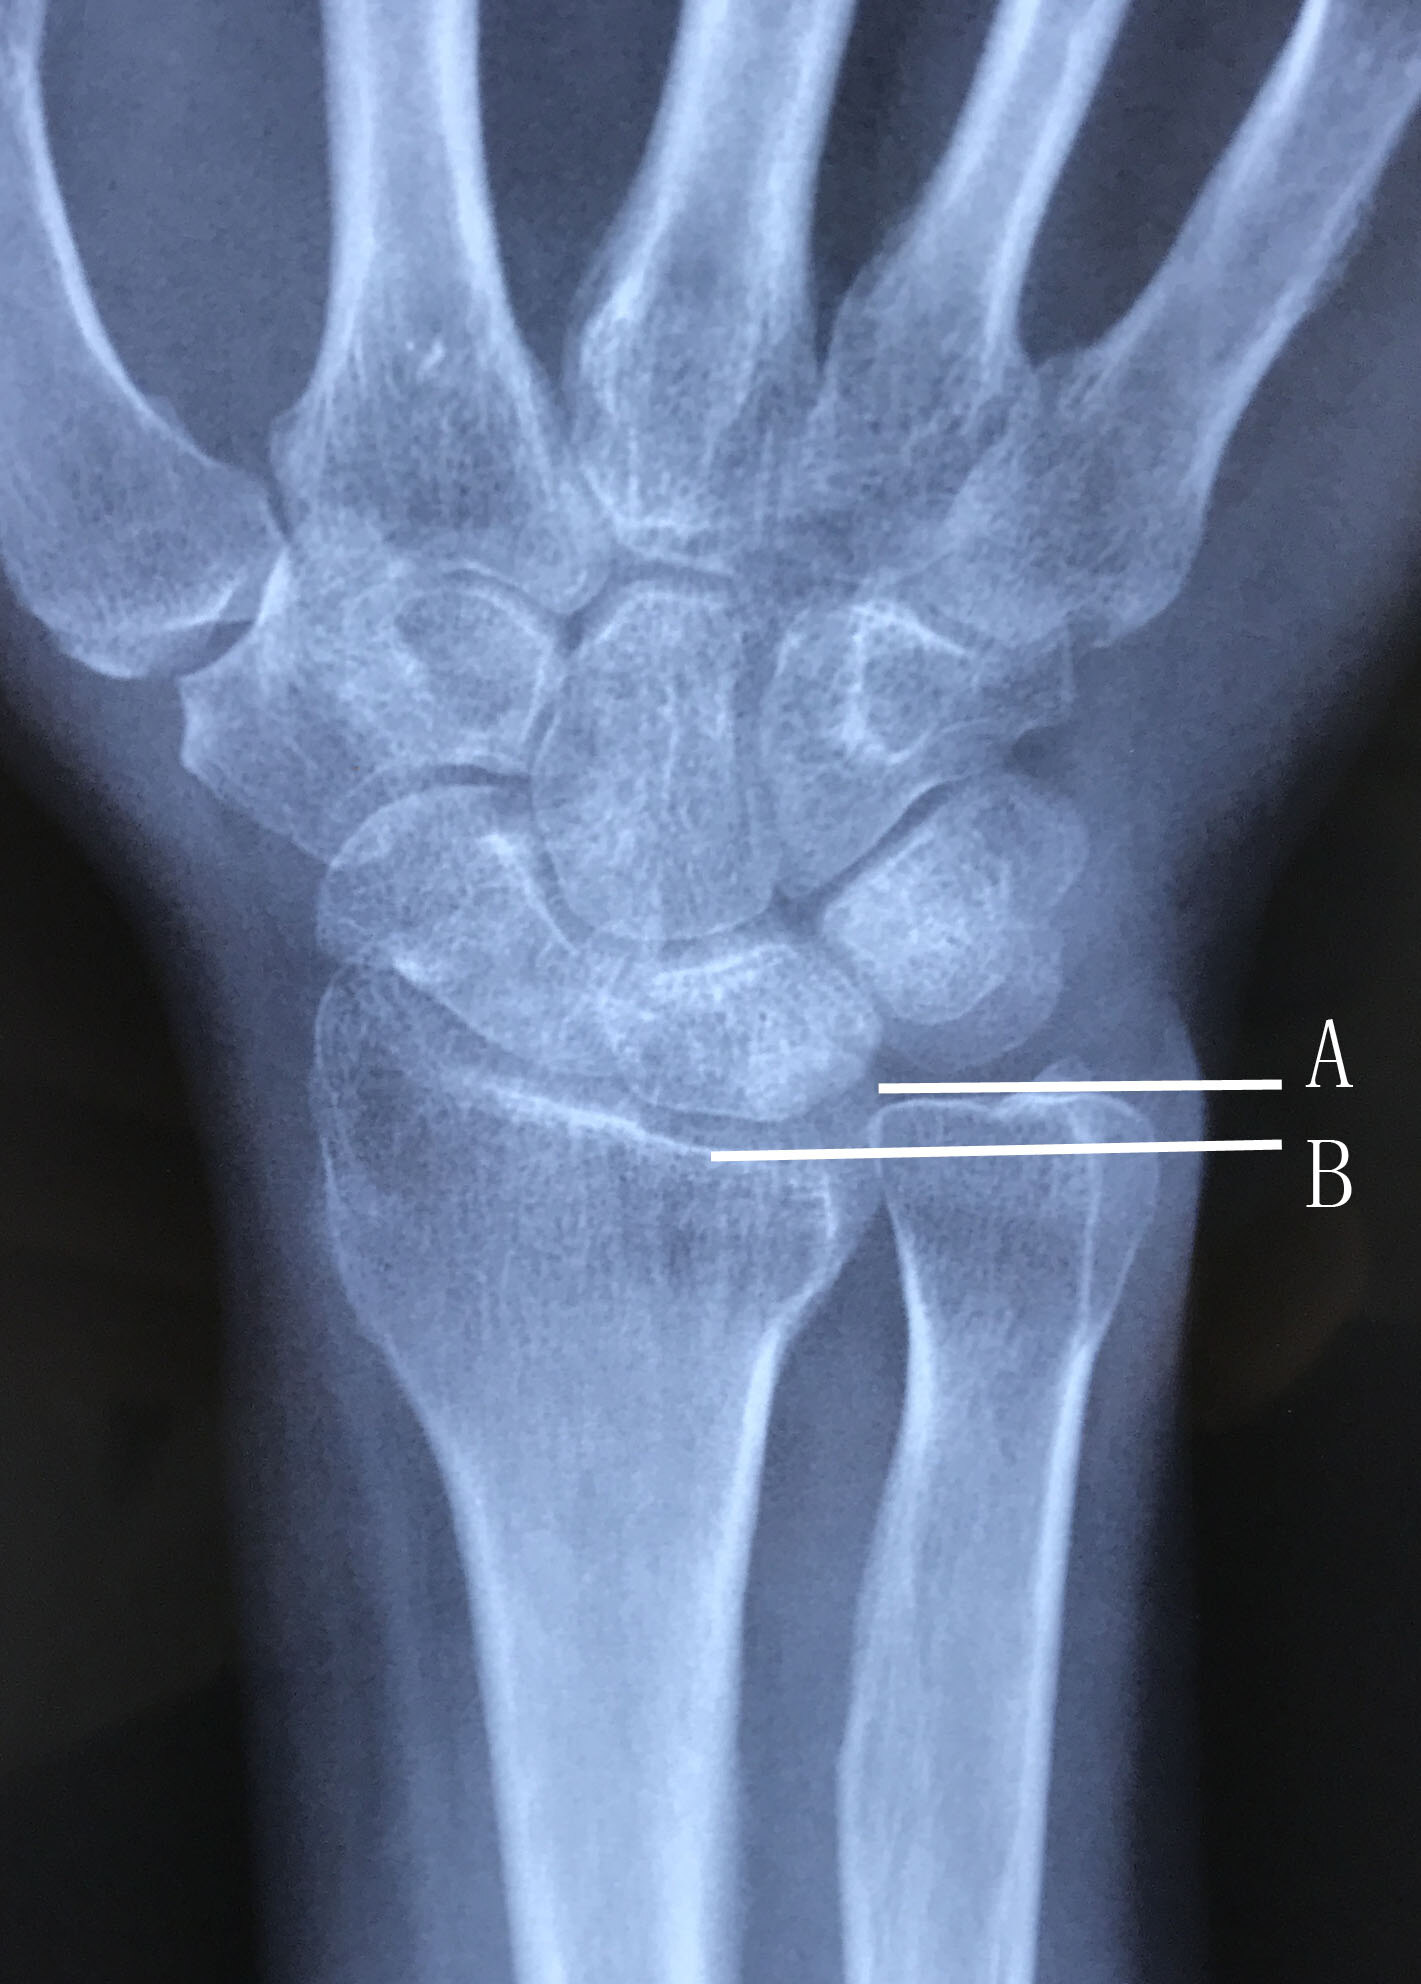 x线可见尺骨正向变异(尺骨头平面高于桡骨远端掌侧缘,月骨尺侧近端